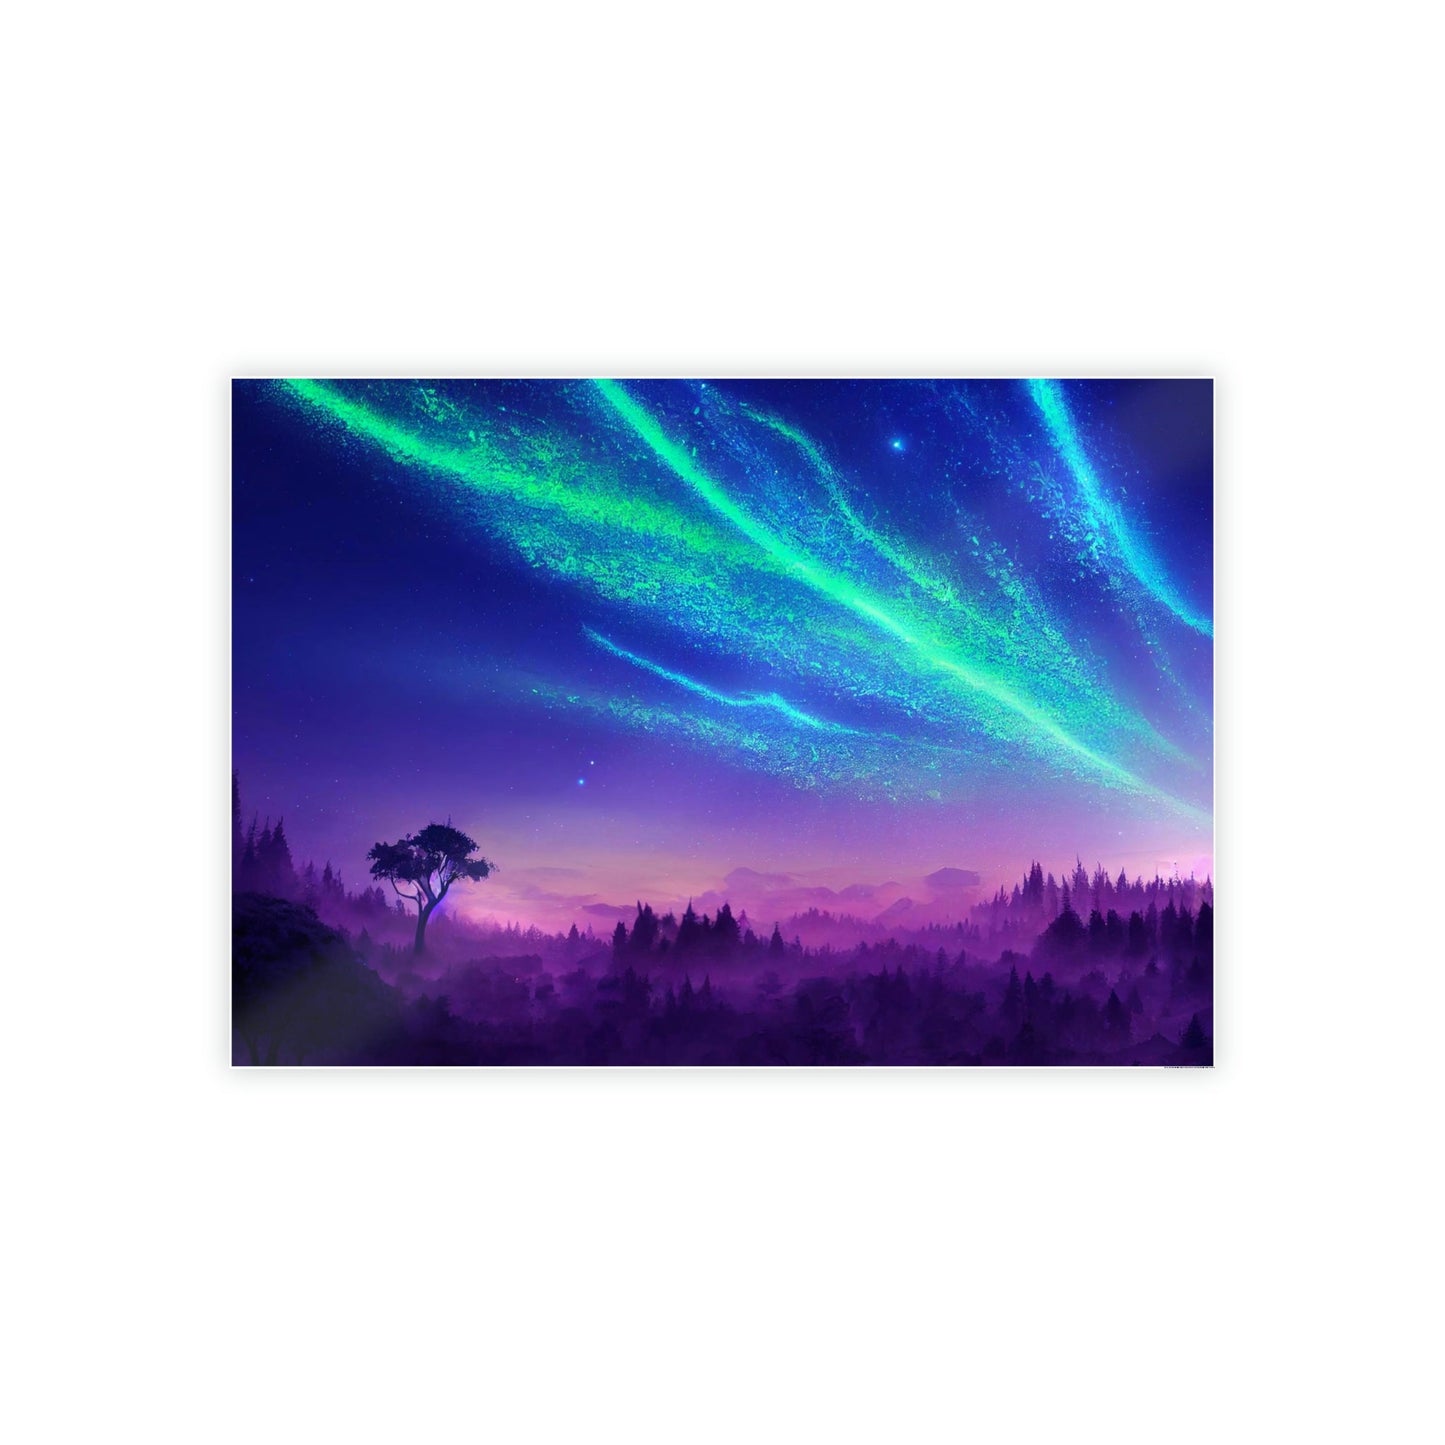 Aurora Borealis Nights: An Enchanting Display of Nature's Wonders